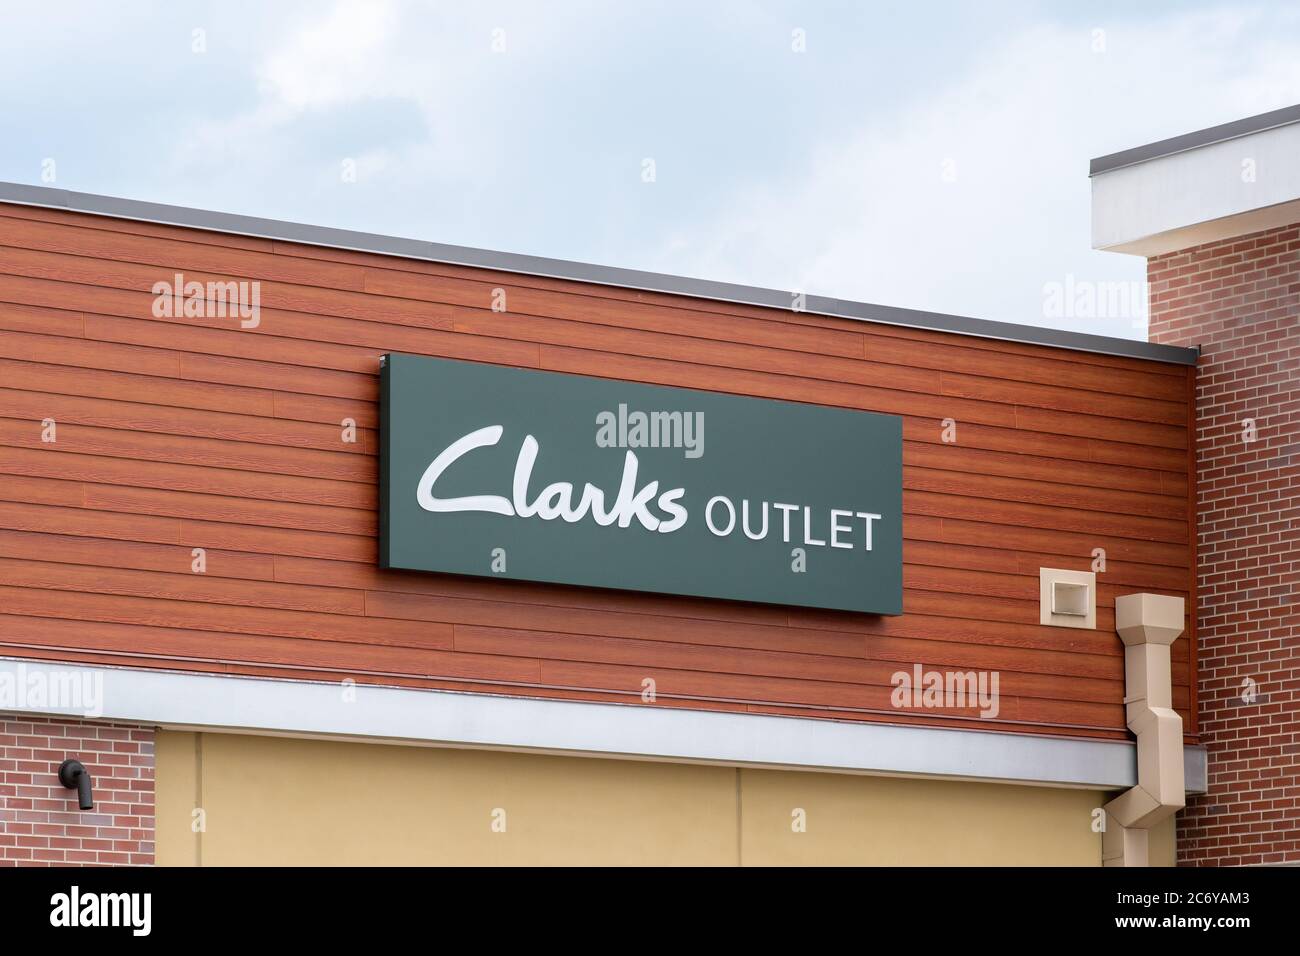 clarks outlet address